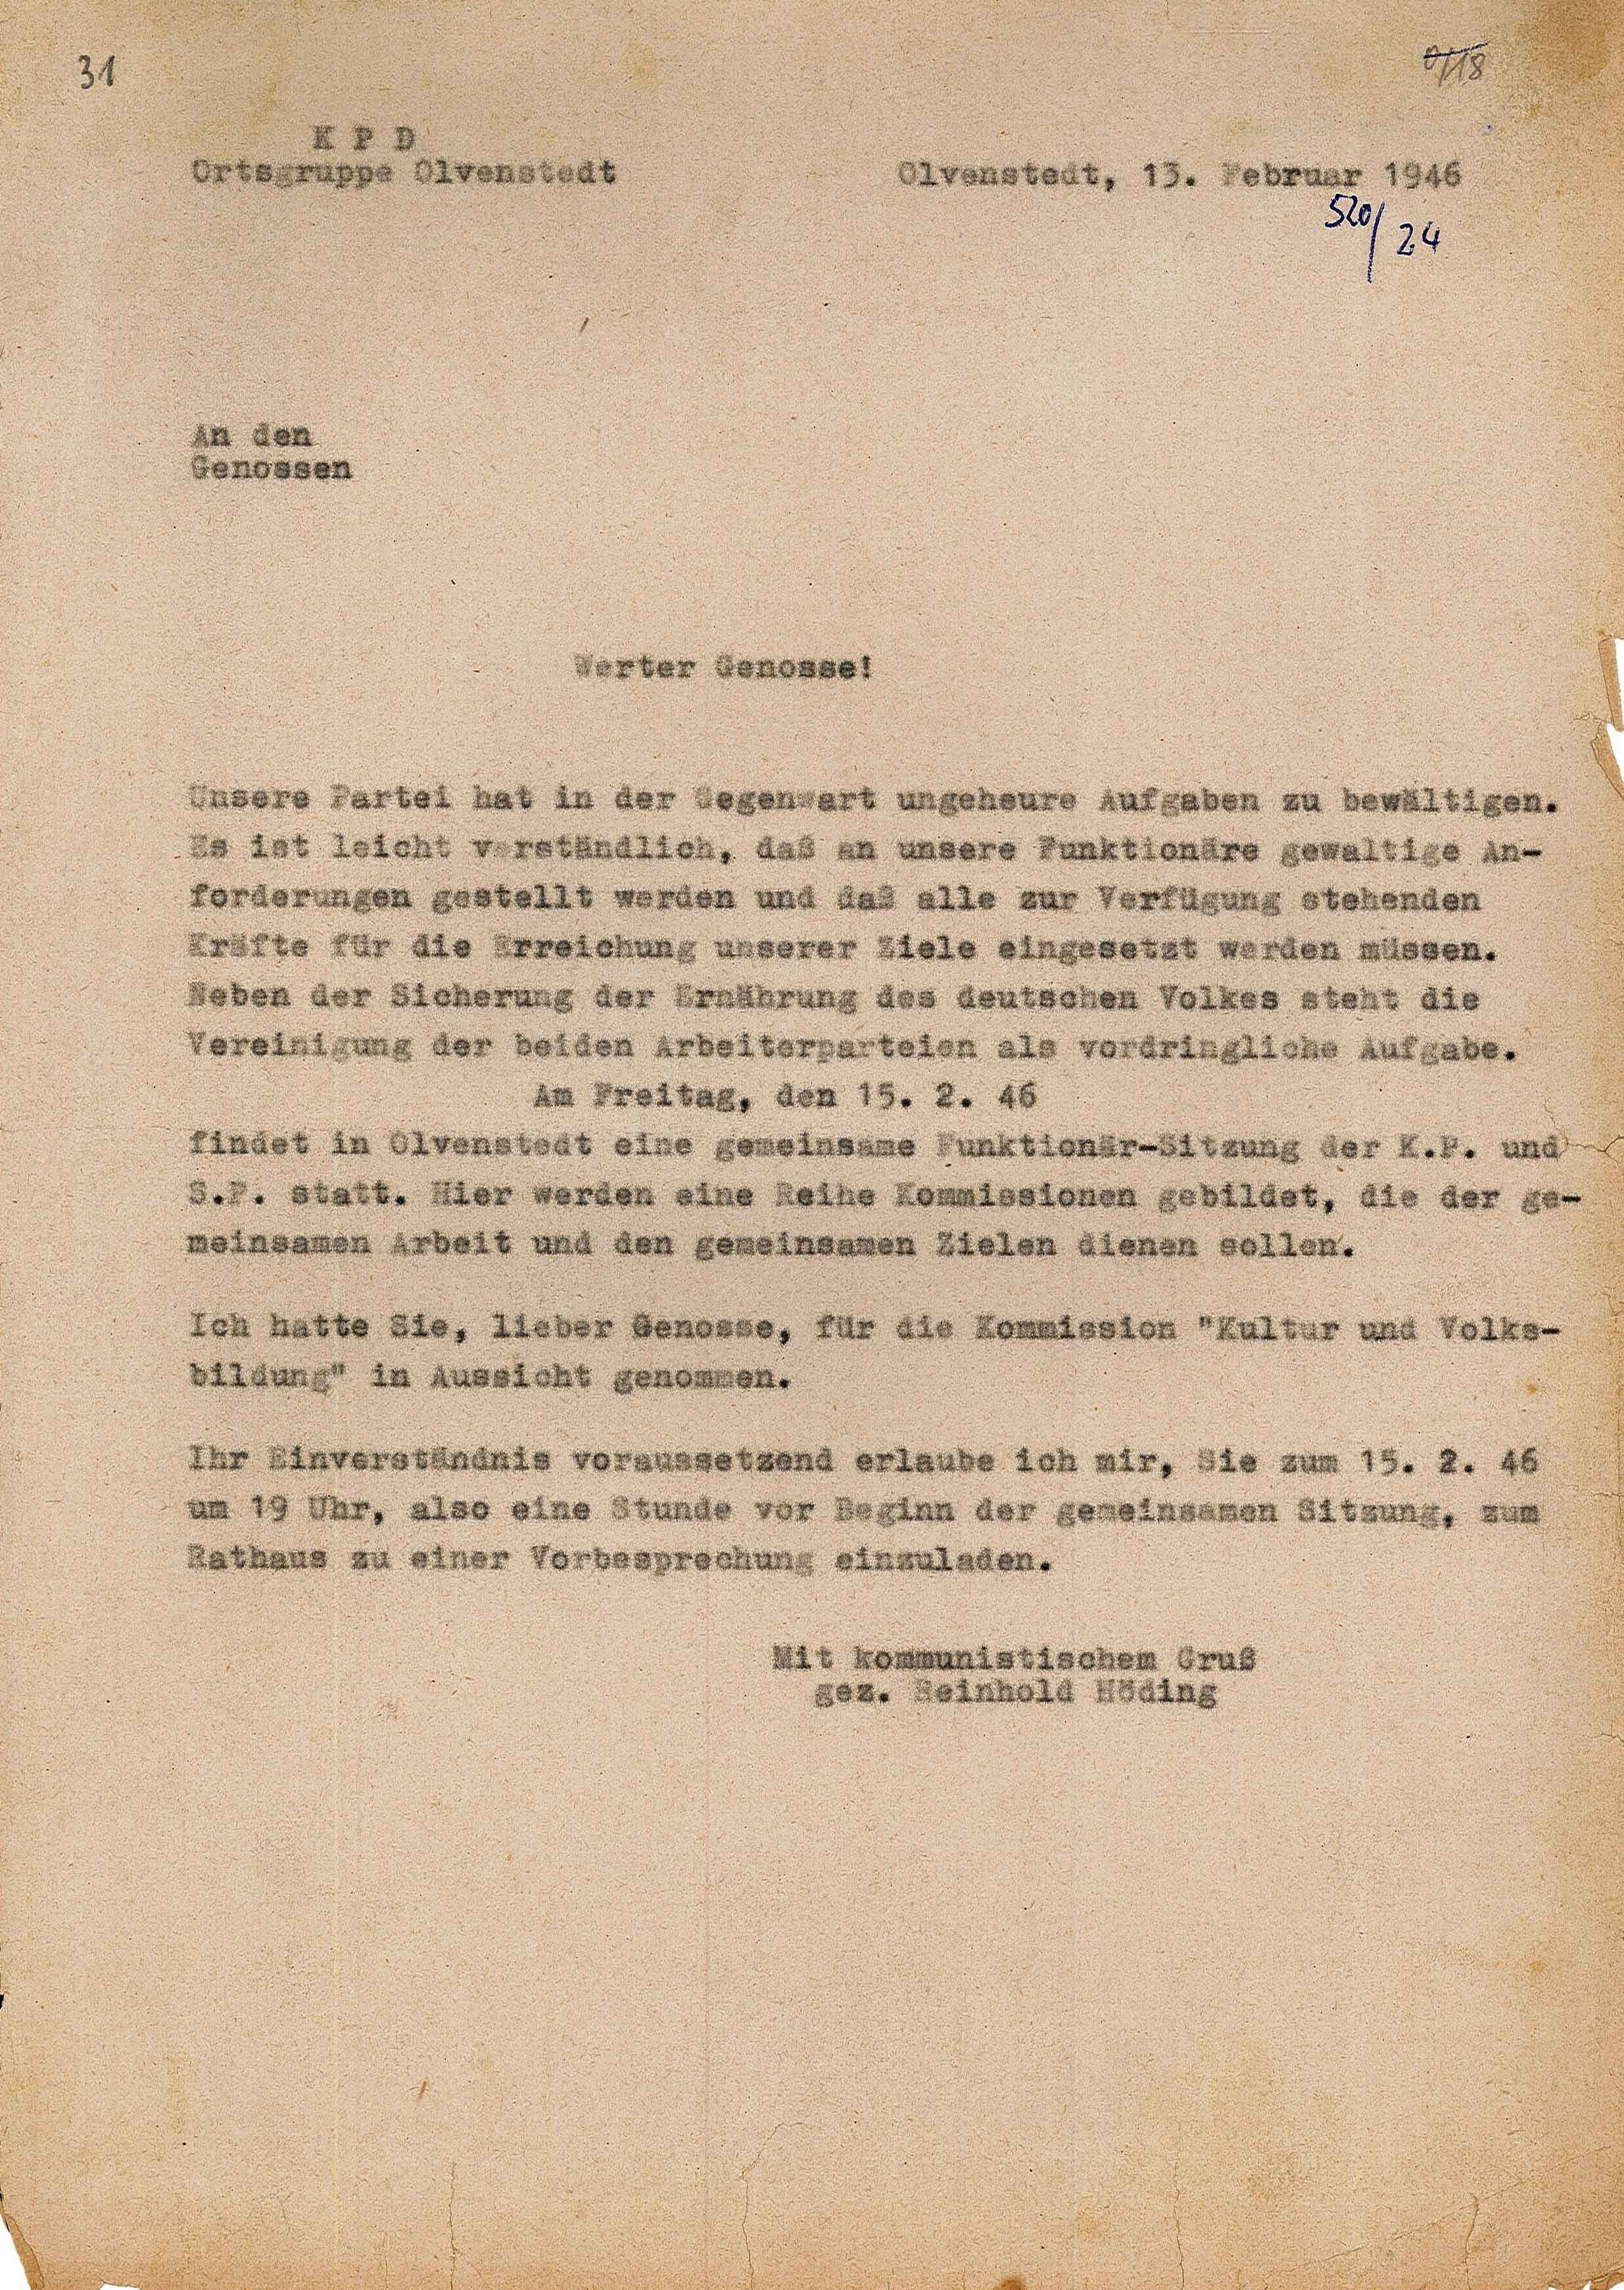 Einladung zur Vorbesprechung bezüglich einer gemeinsamen Sitzung von KPD und SPD, 13. Februar 1946 (Museum Wolmirstedt RR-F)